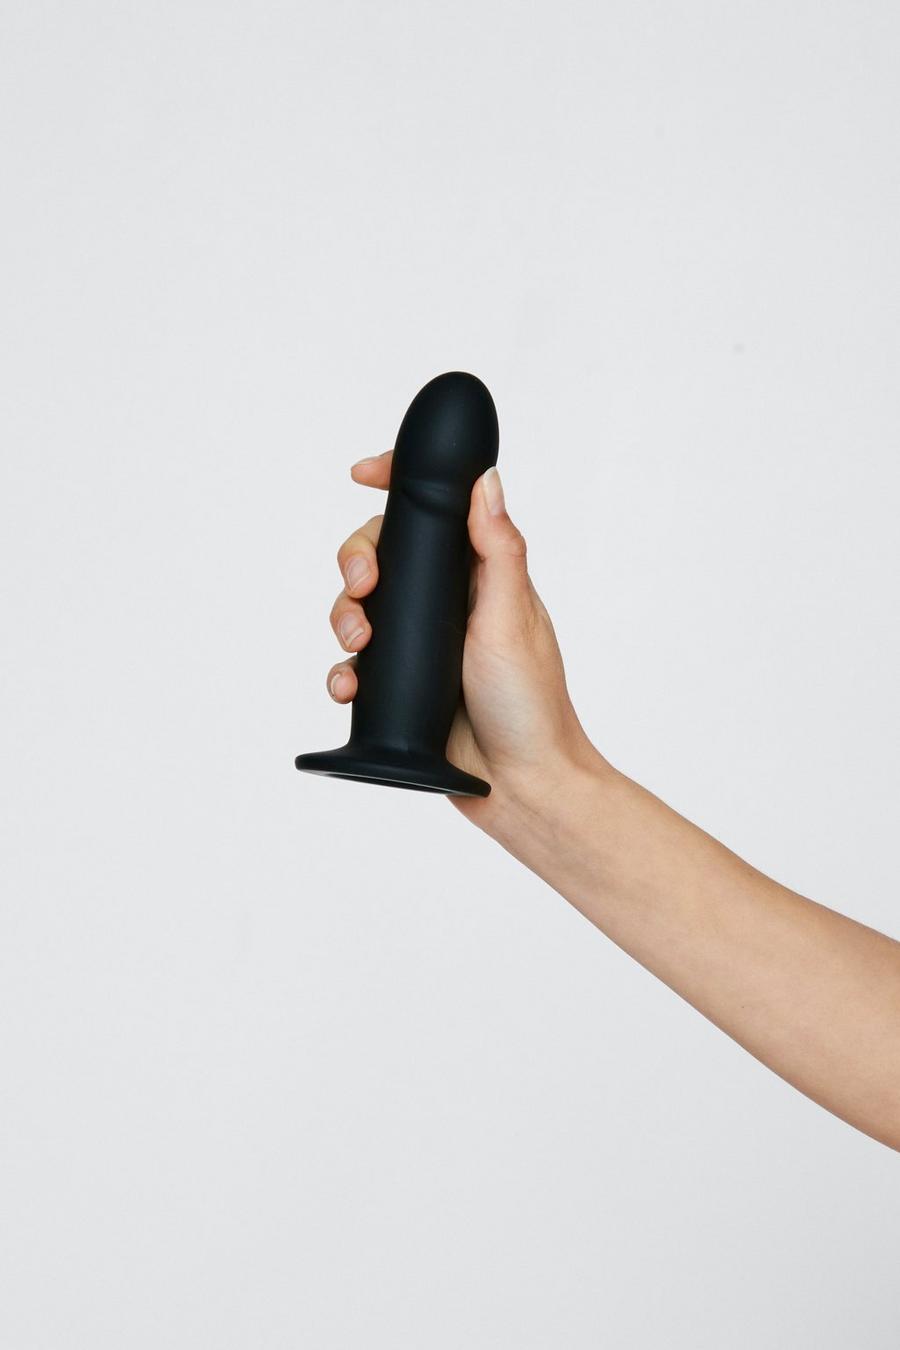 Medium Dildo Sex Toy